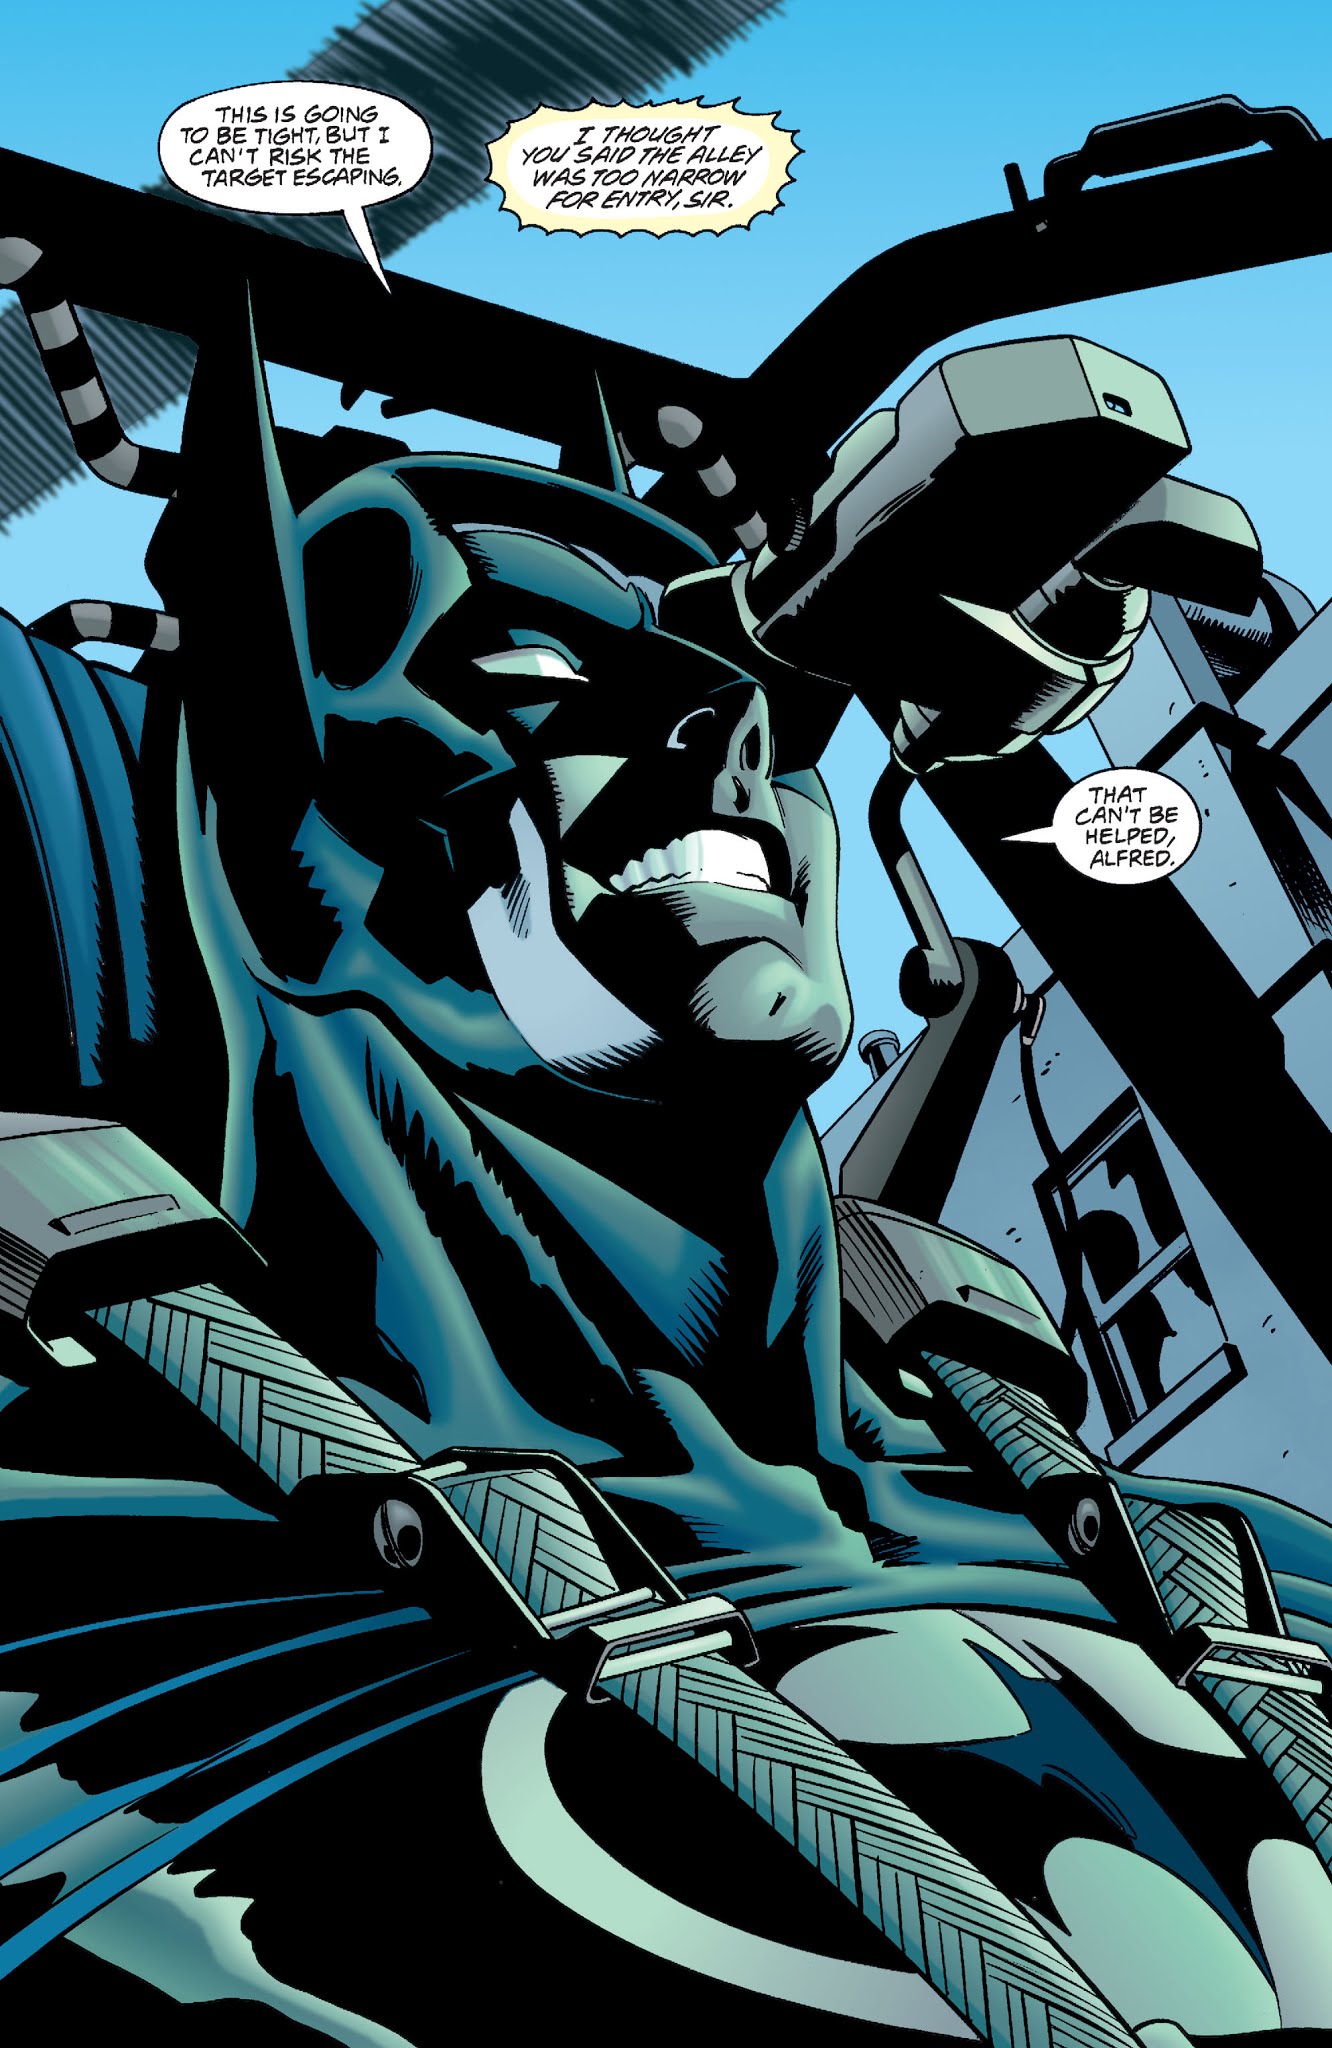 Read online DC Comics/Dark Horse Comics: Batman vs. Predator comic -  Issue # TPB (Part 4) - 11